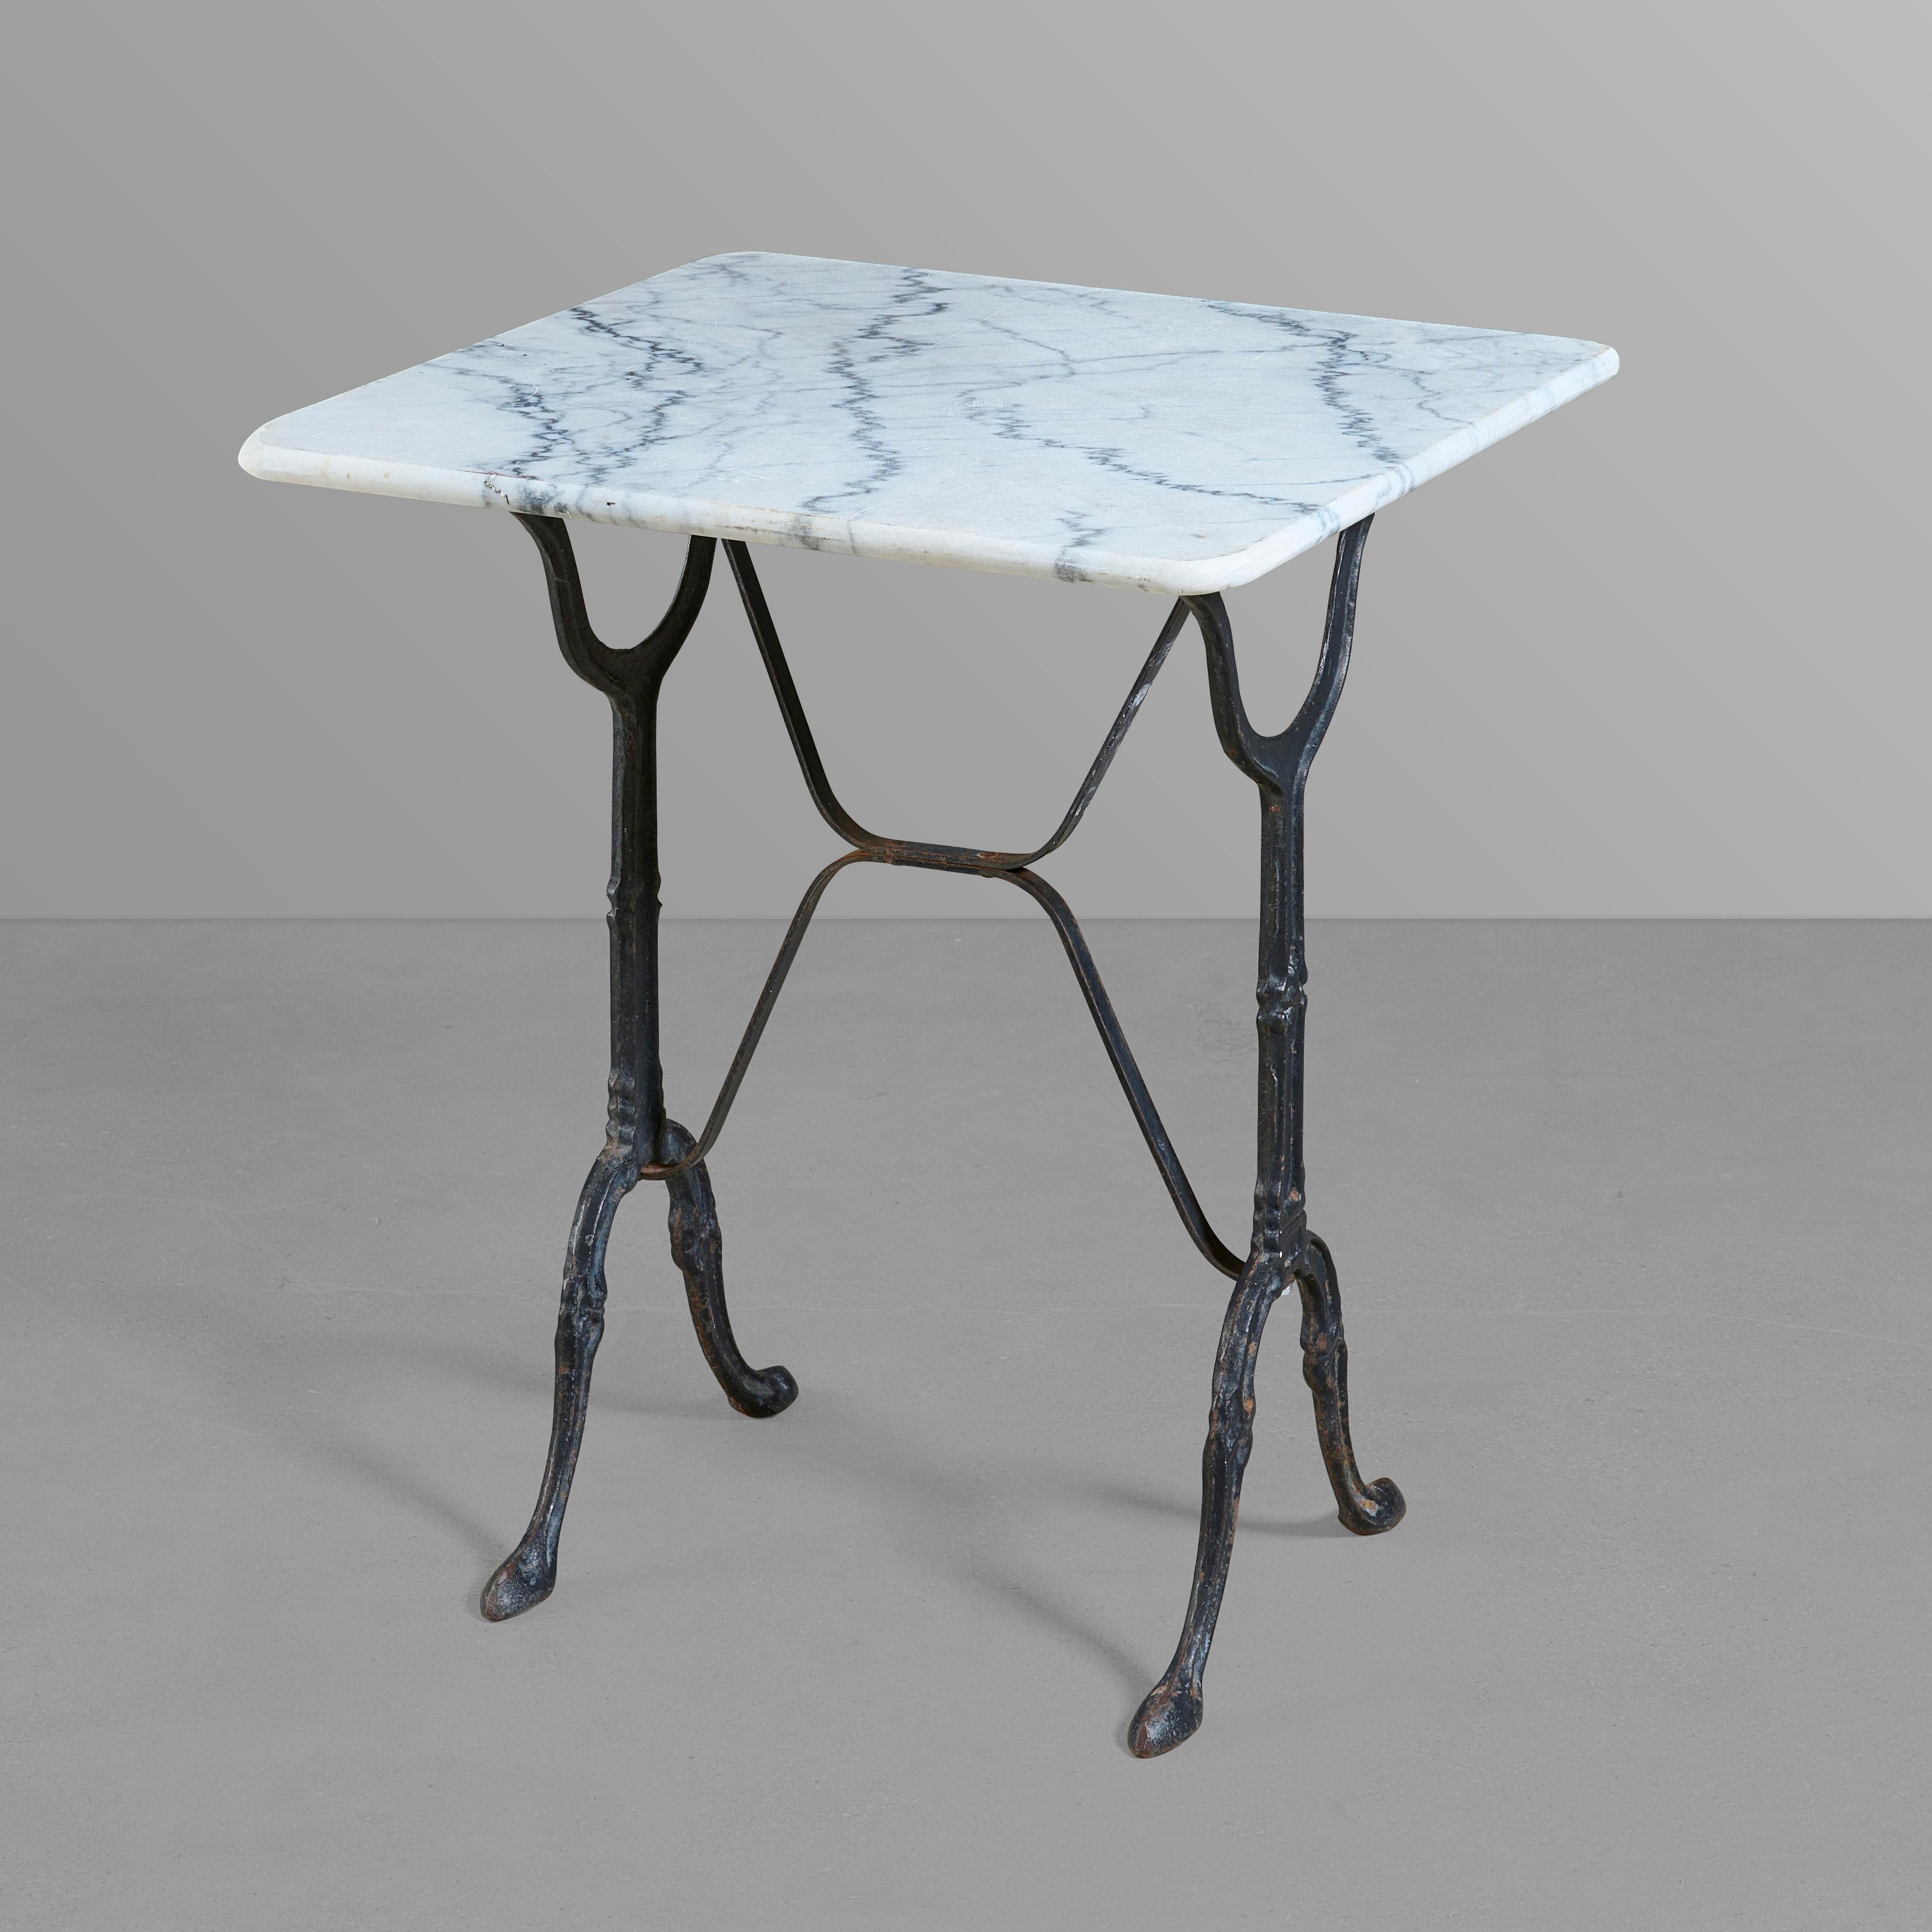 Cafe-Tisch aus Gusseisen mit originaler Platte aus Carrara-Marmor.

